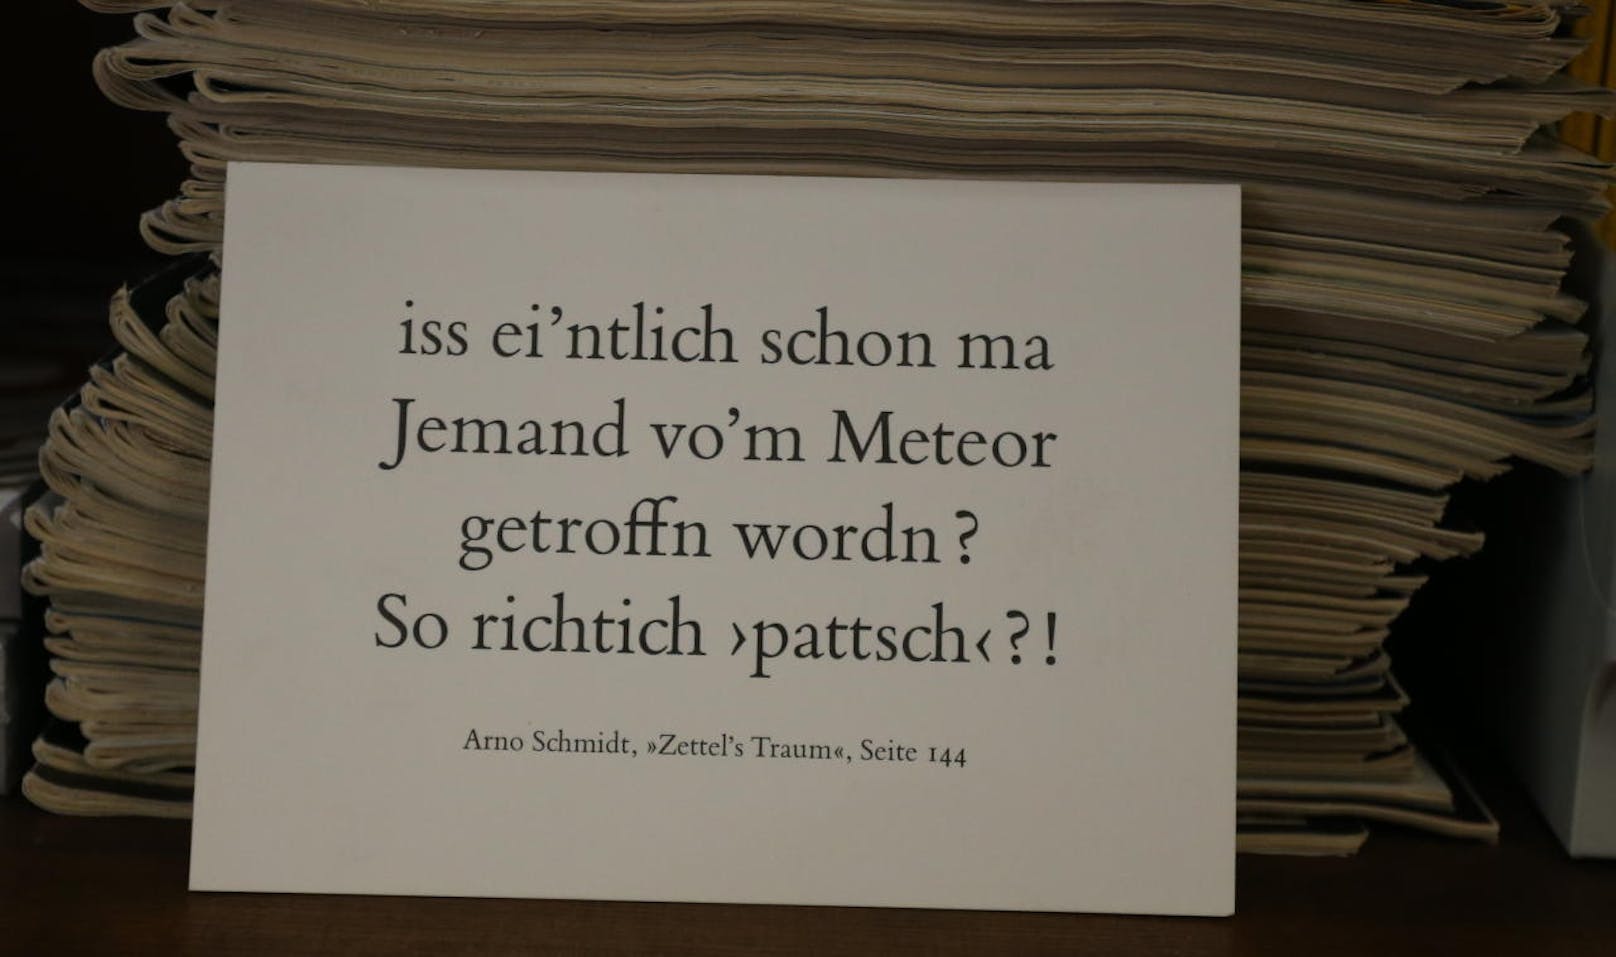 Im seinem Büro im Naturhistorischen Museum hat Direktor Köberl nicht nur einige Kunstwerke seiner Frau, sondern auch ein - zur Faszination von Kratern und Einschlägen - passendes Zitat vom deutschen Schriftsteller Arno Schmidt.